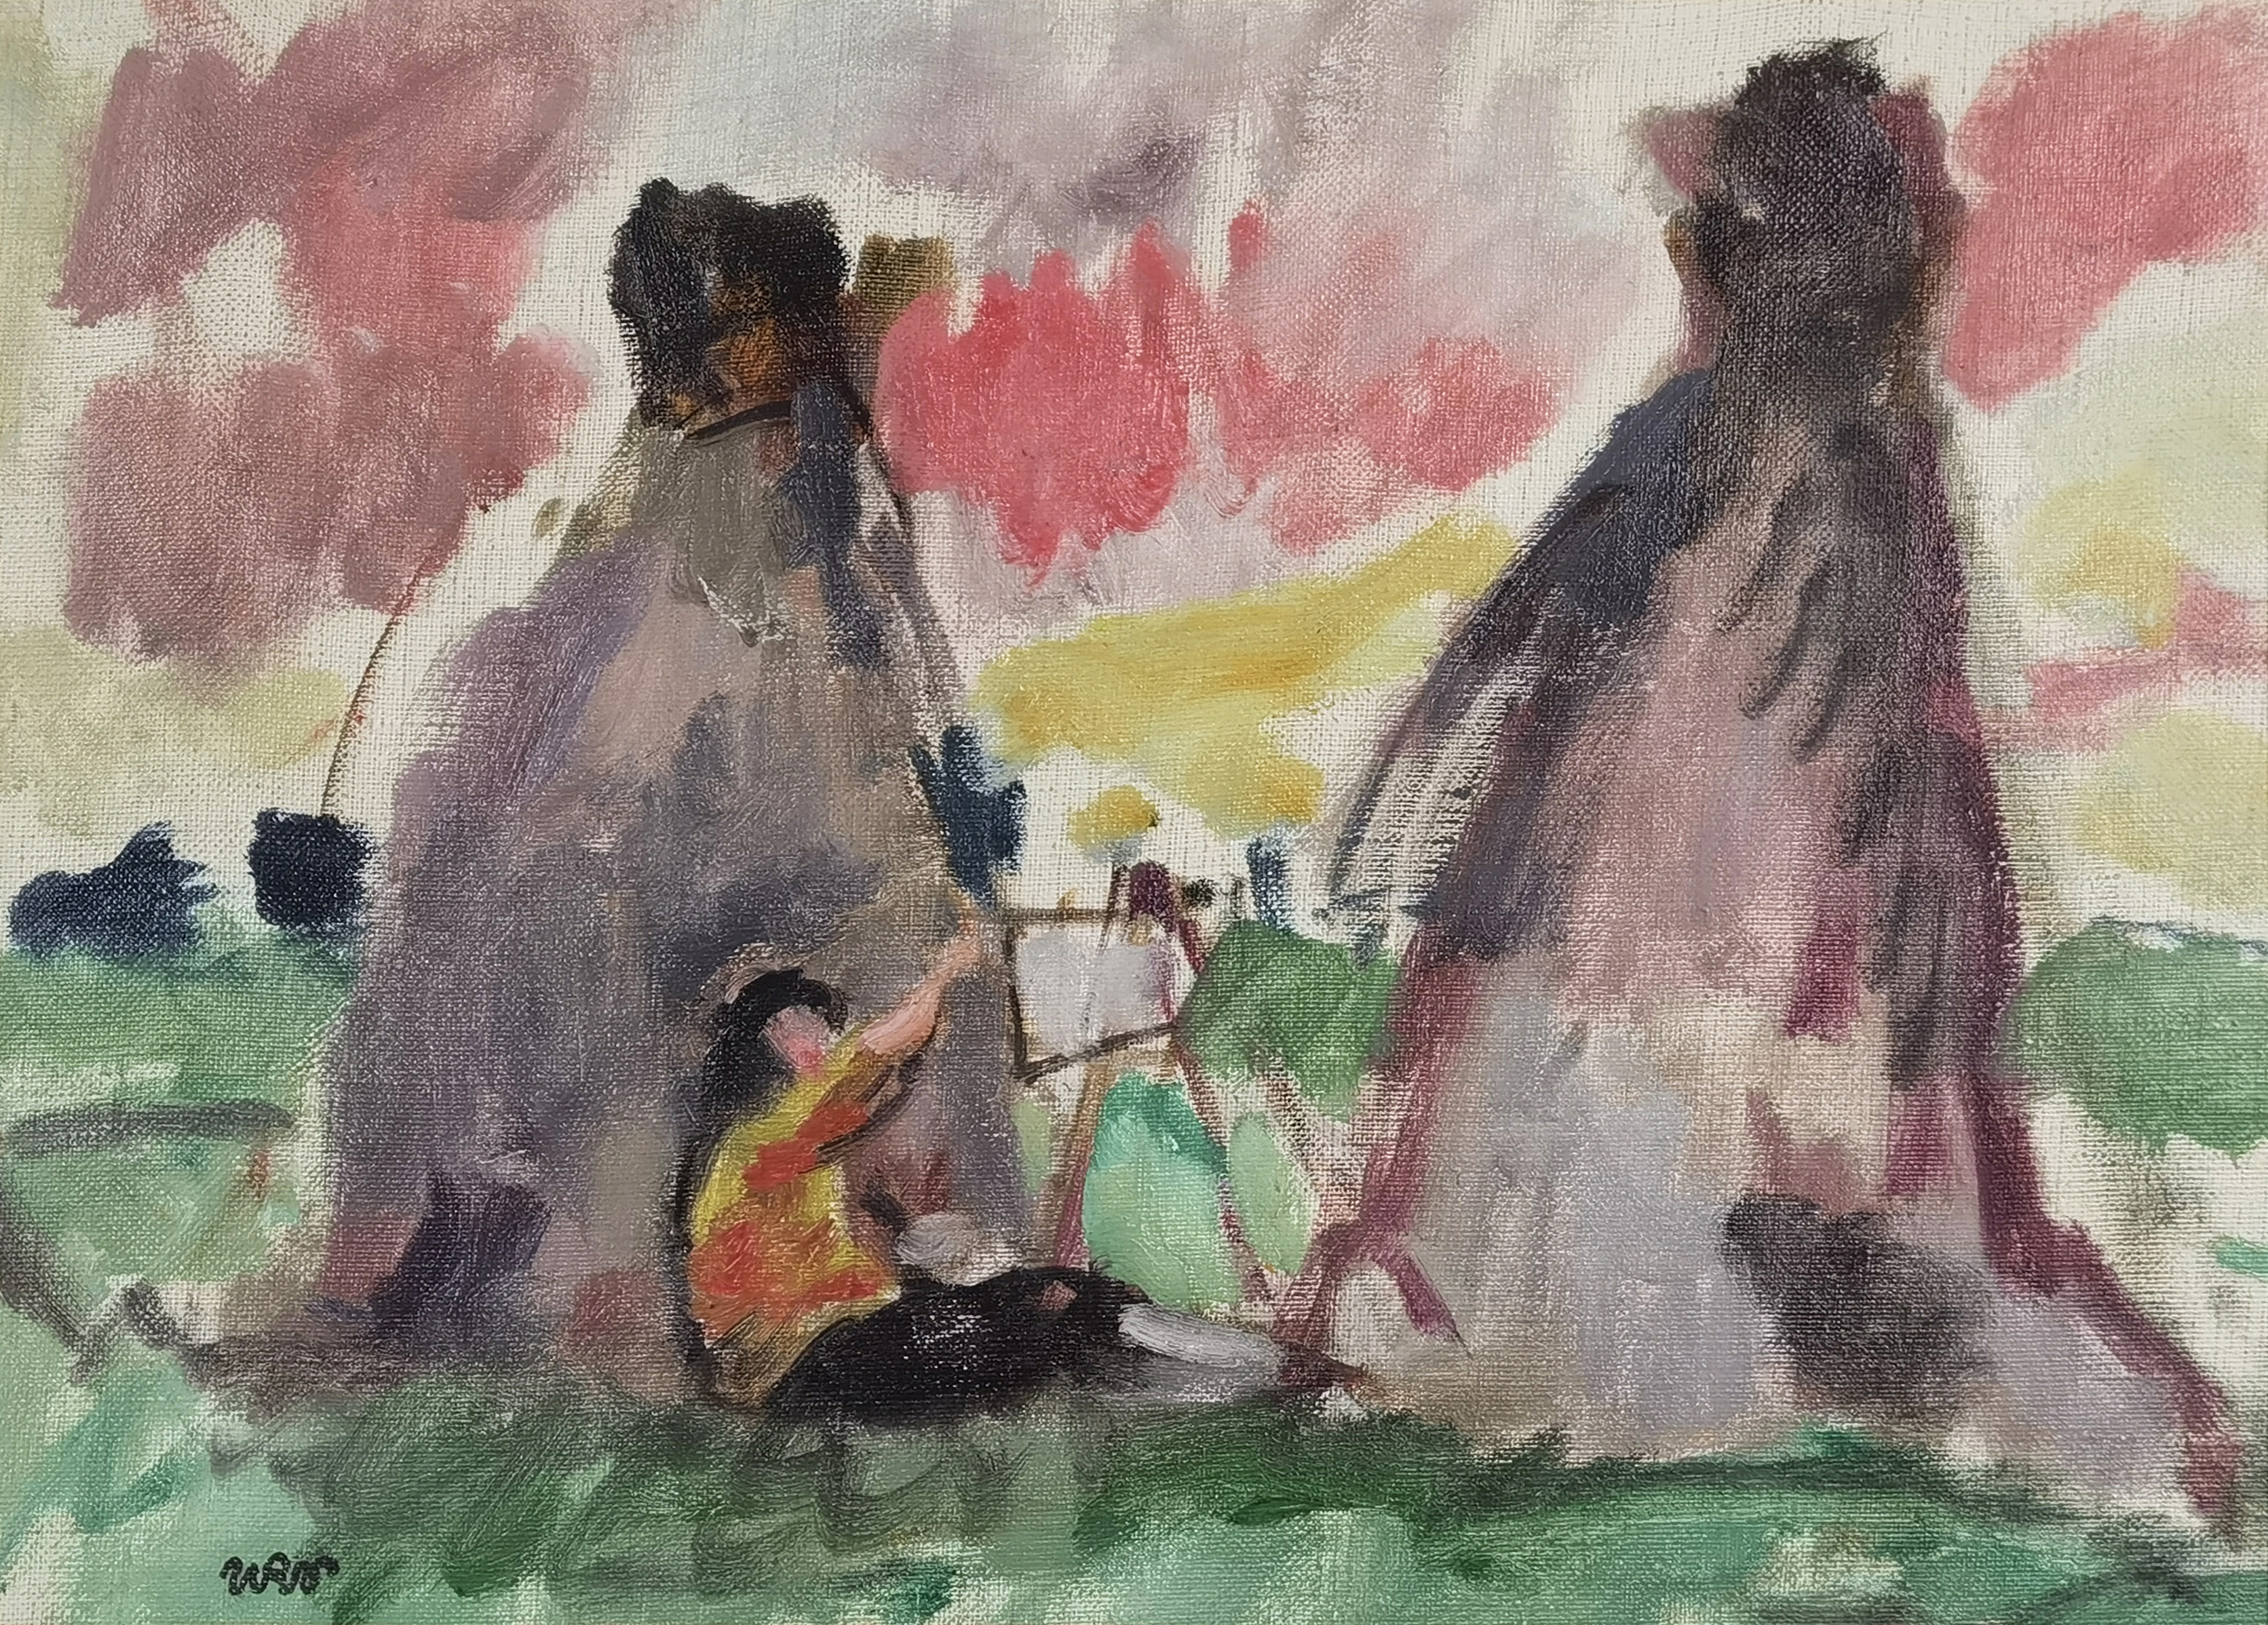 Malarka wśród stogów siana - studium obrazu: Aneri malująca pod kopami, ok. 1925